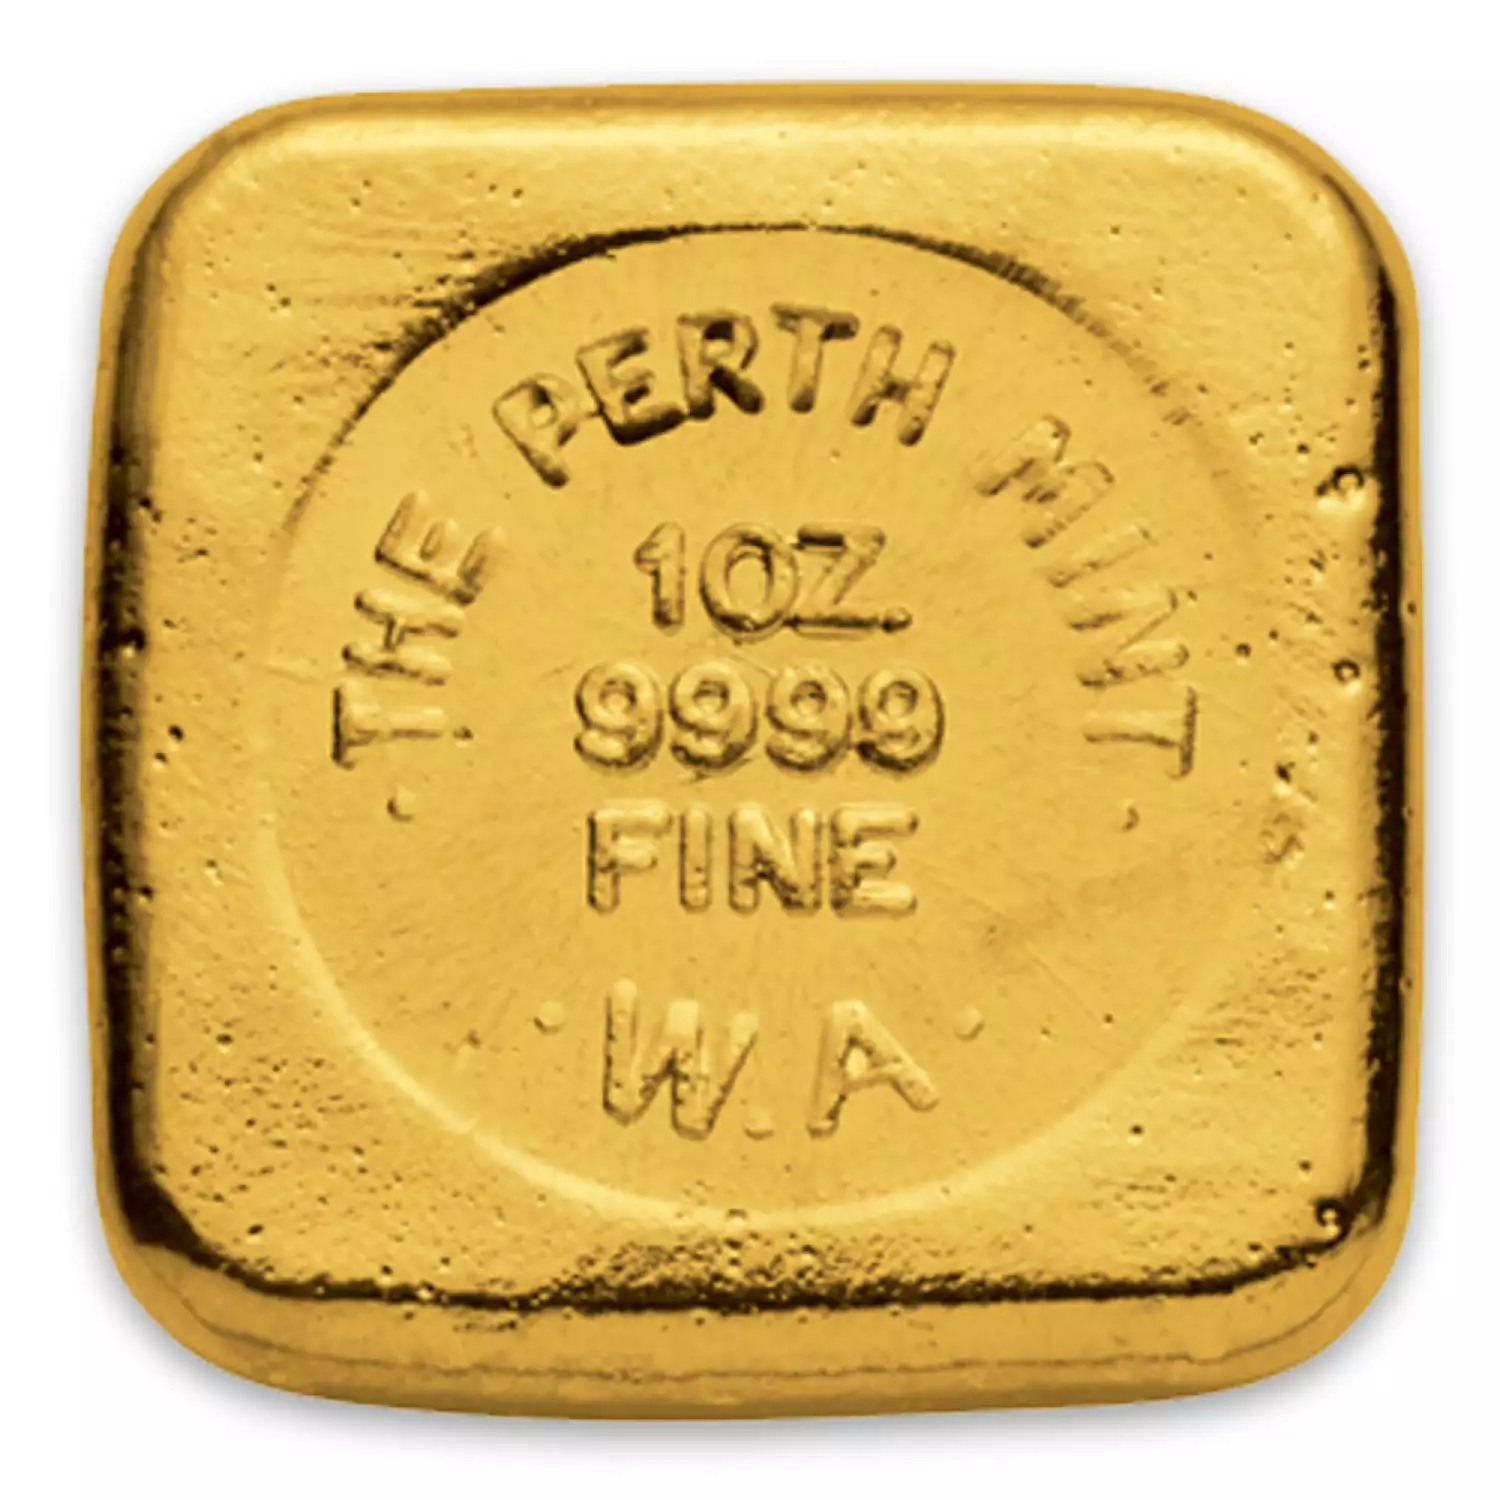 1oz Australian Perth Mint gold bar - cast (2)